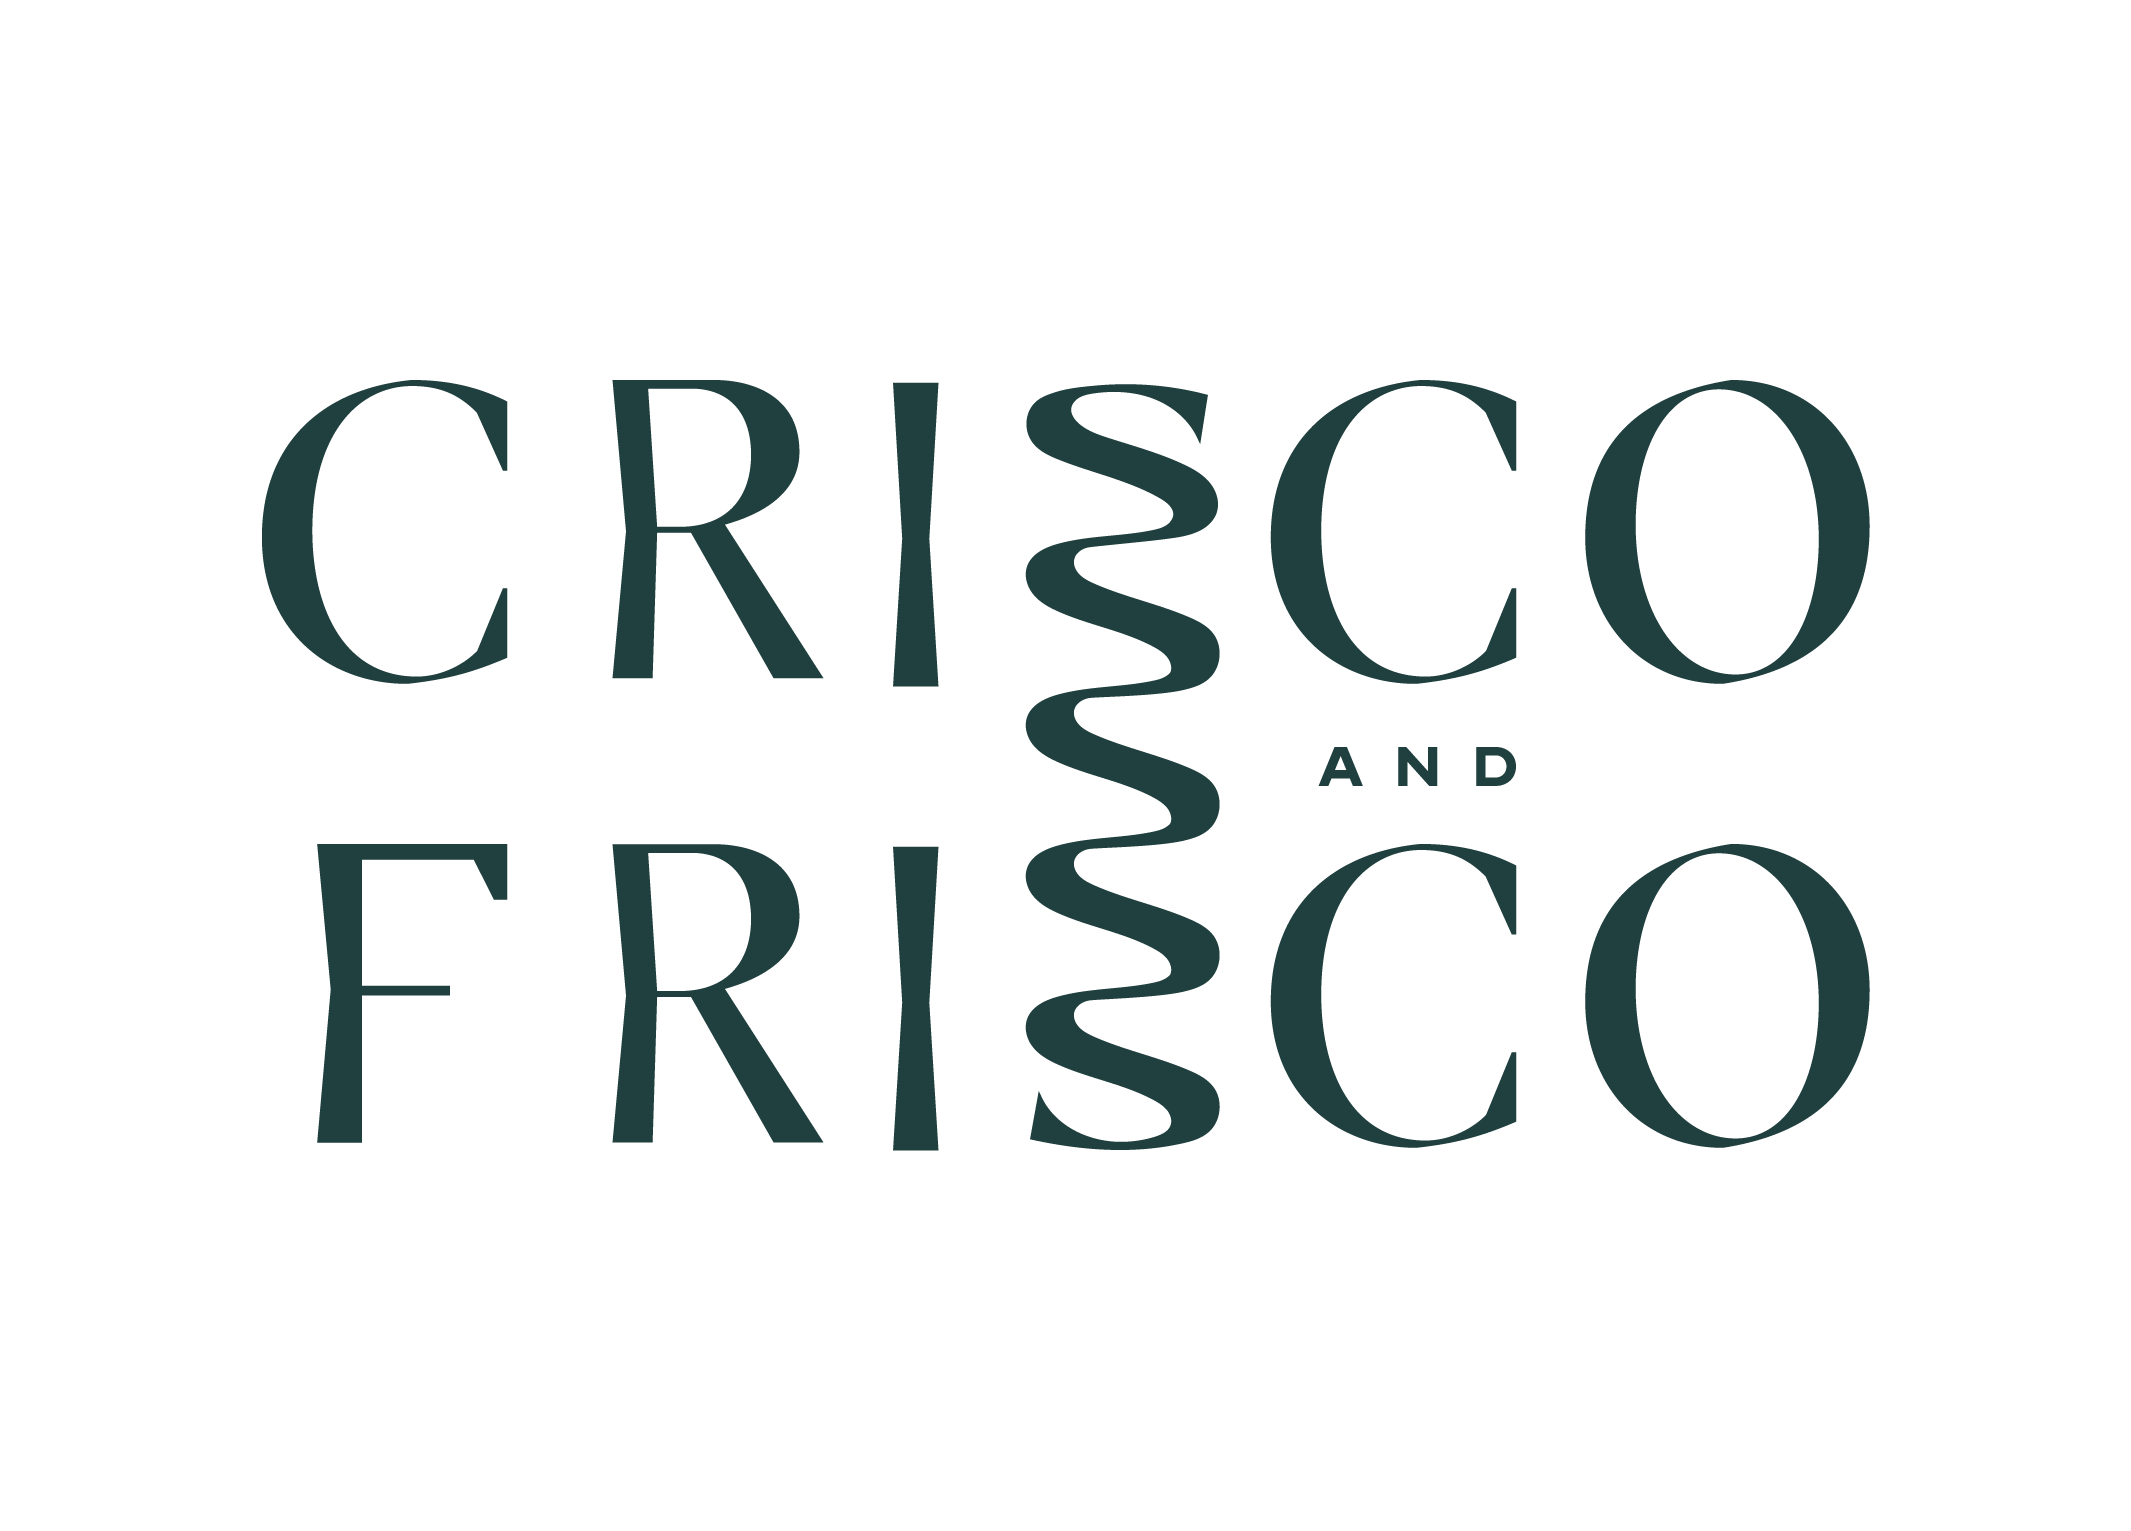  Crisco and Frisco